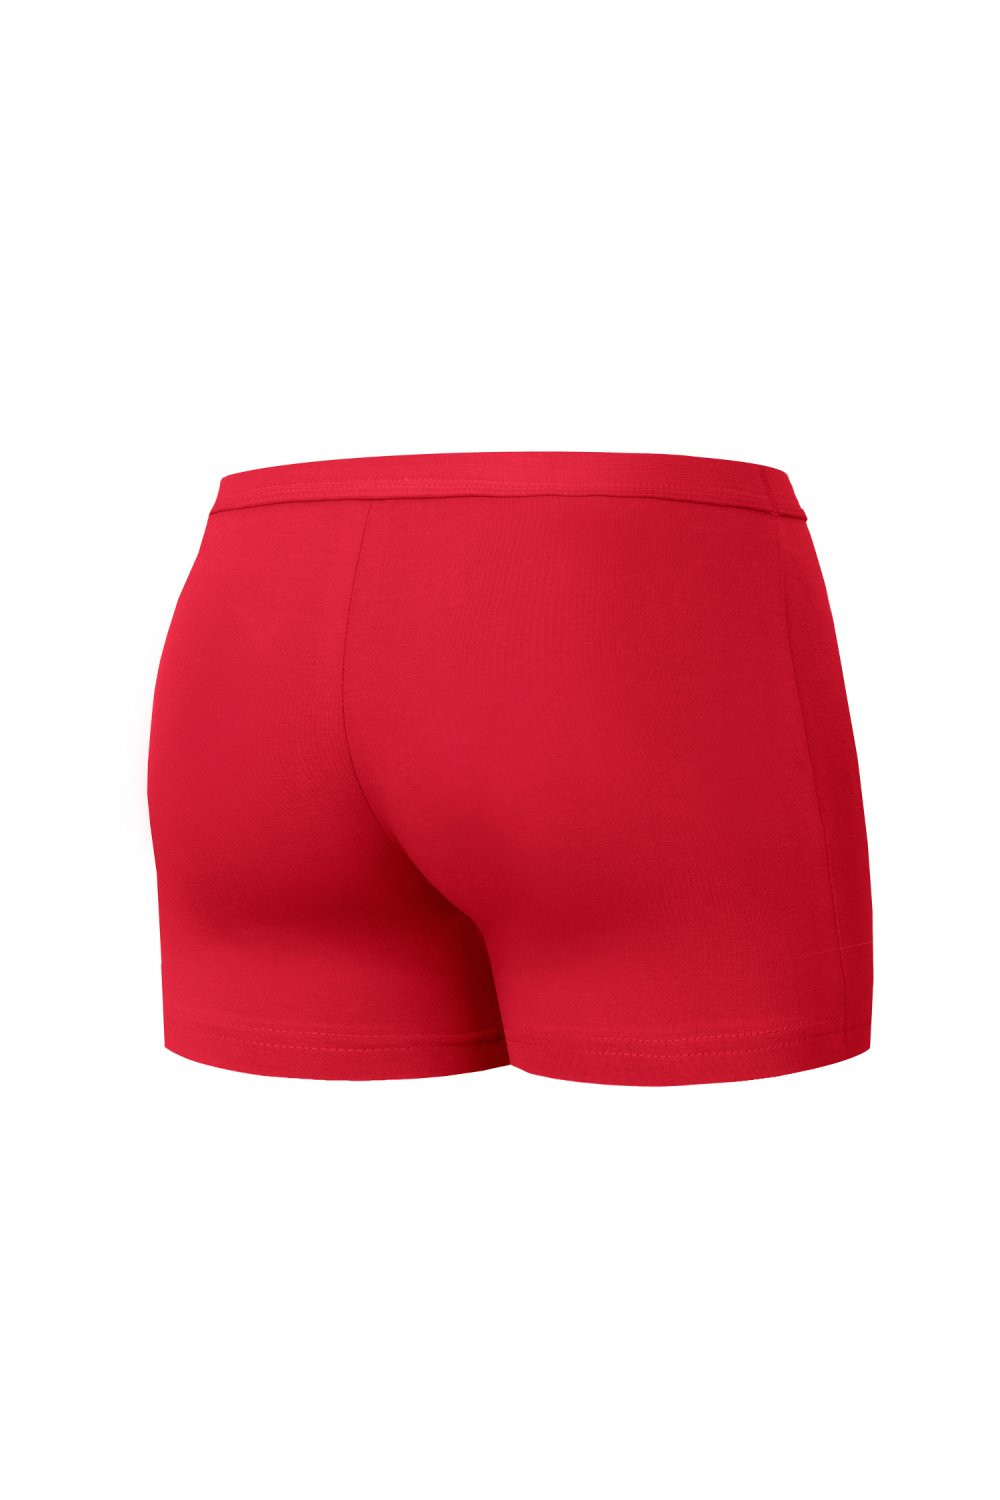 Pánské boxerky 223 Authentic mini red - CORNETTE Barva: Červená, Velikost: S